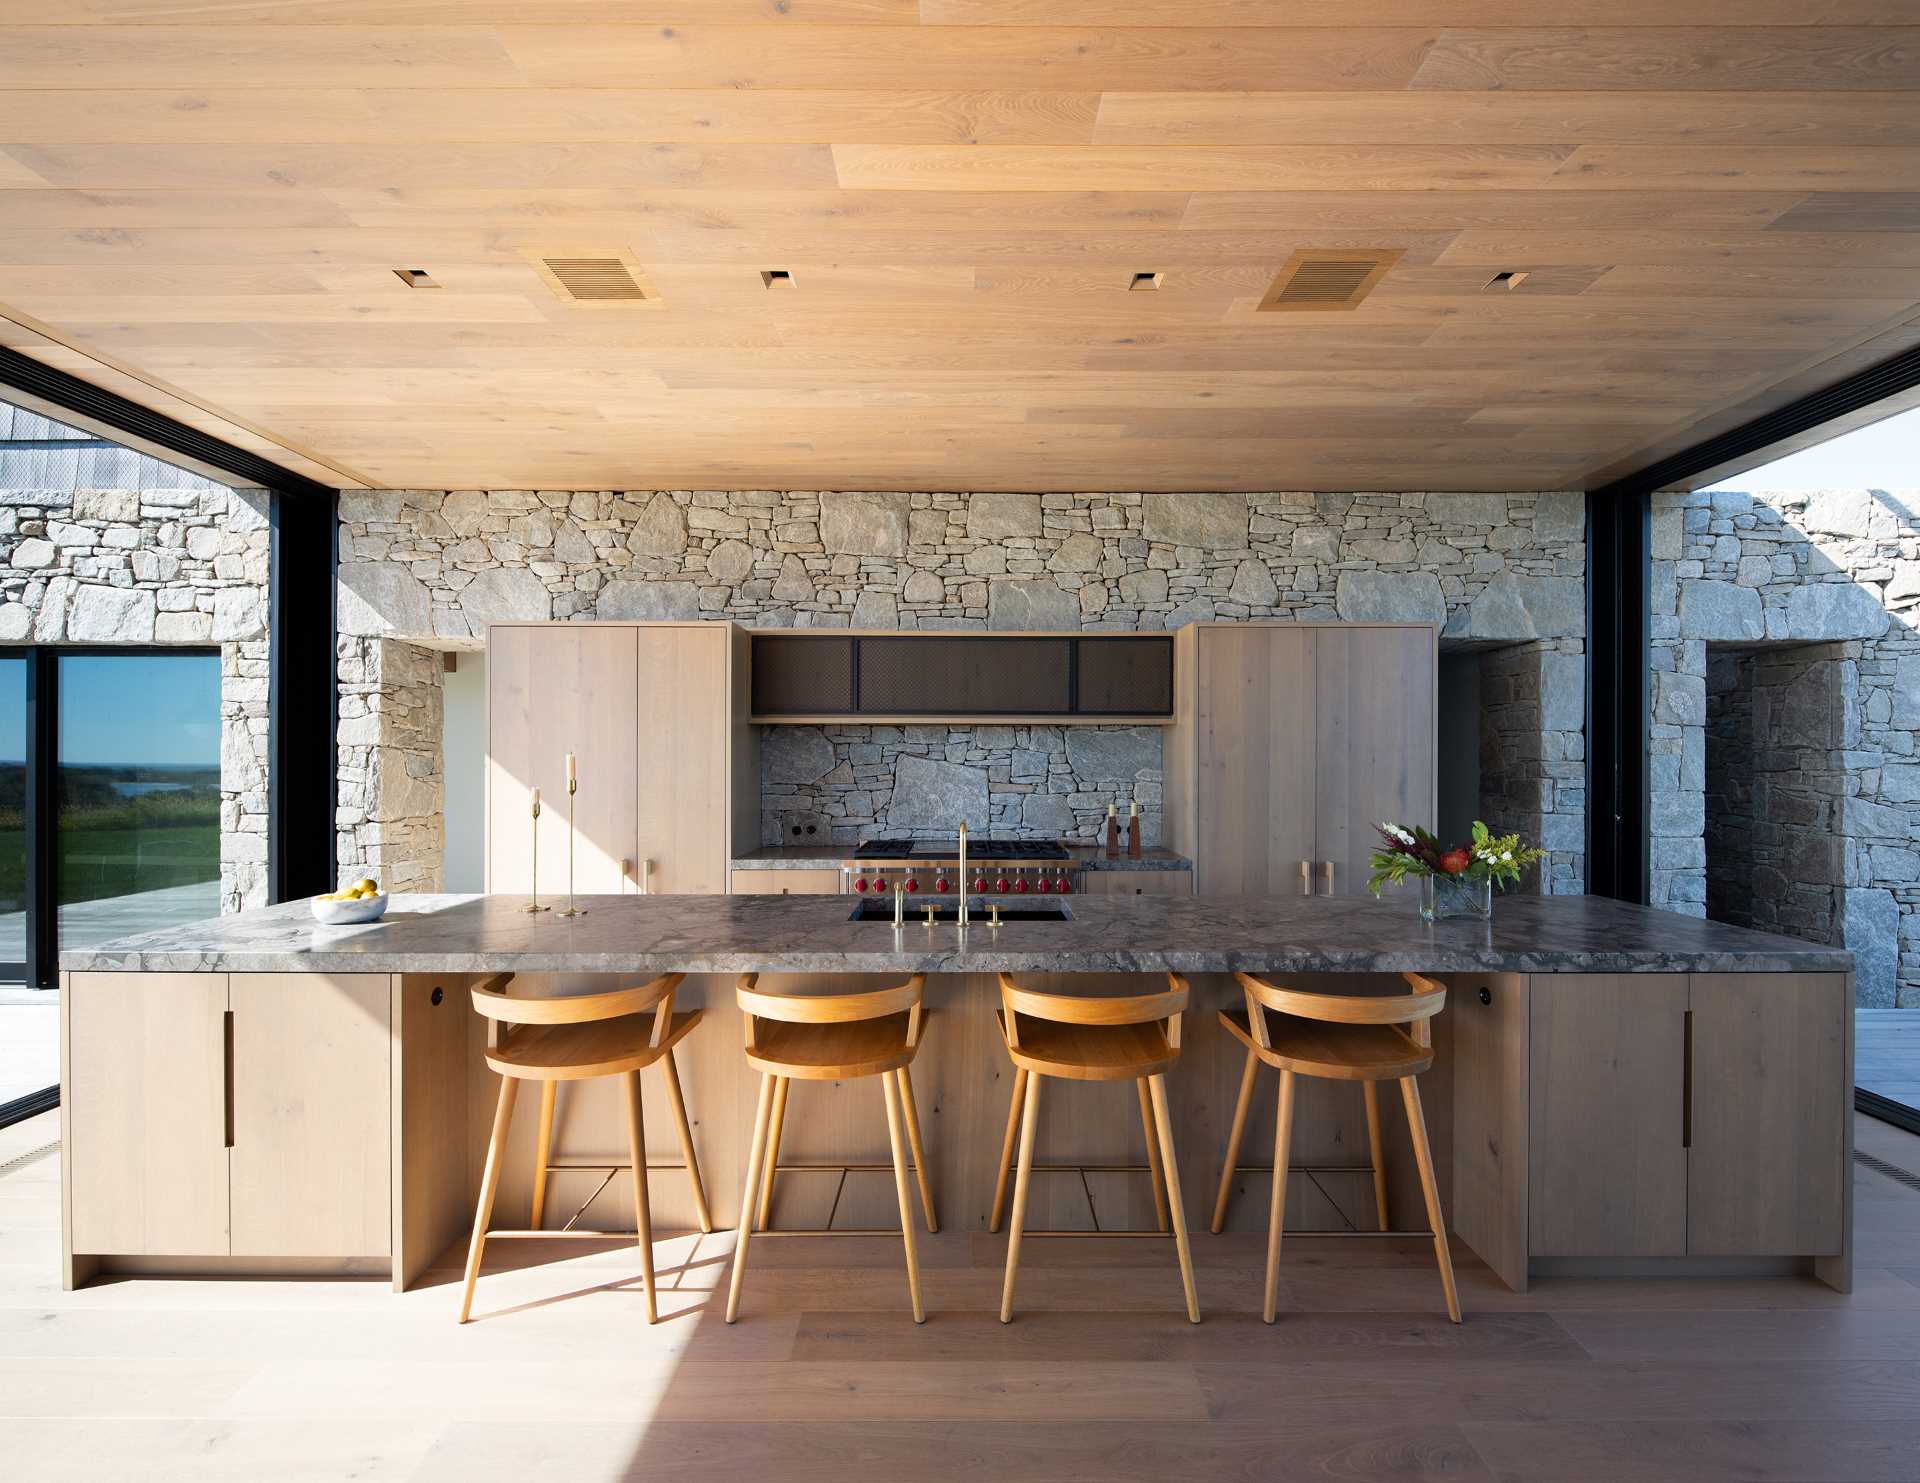 آشپزخانه ای مدرن با دیوار سنگی که از داخل به بیرون خانه می رود.